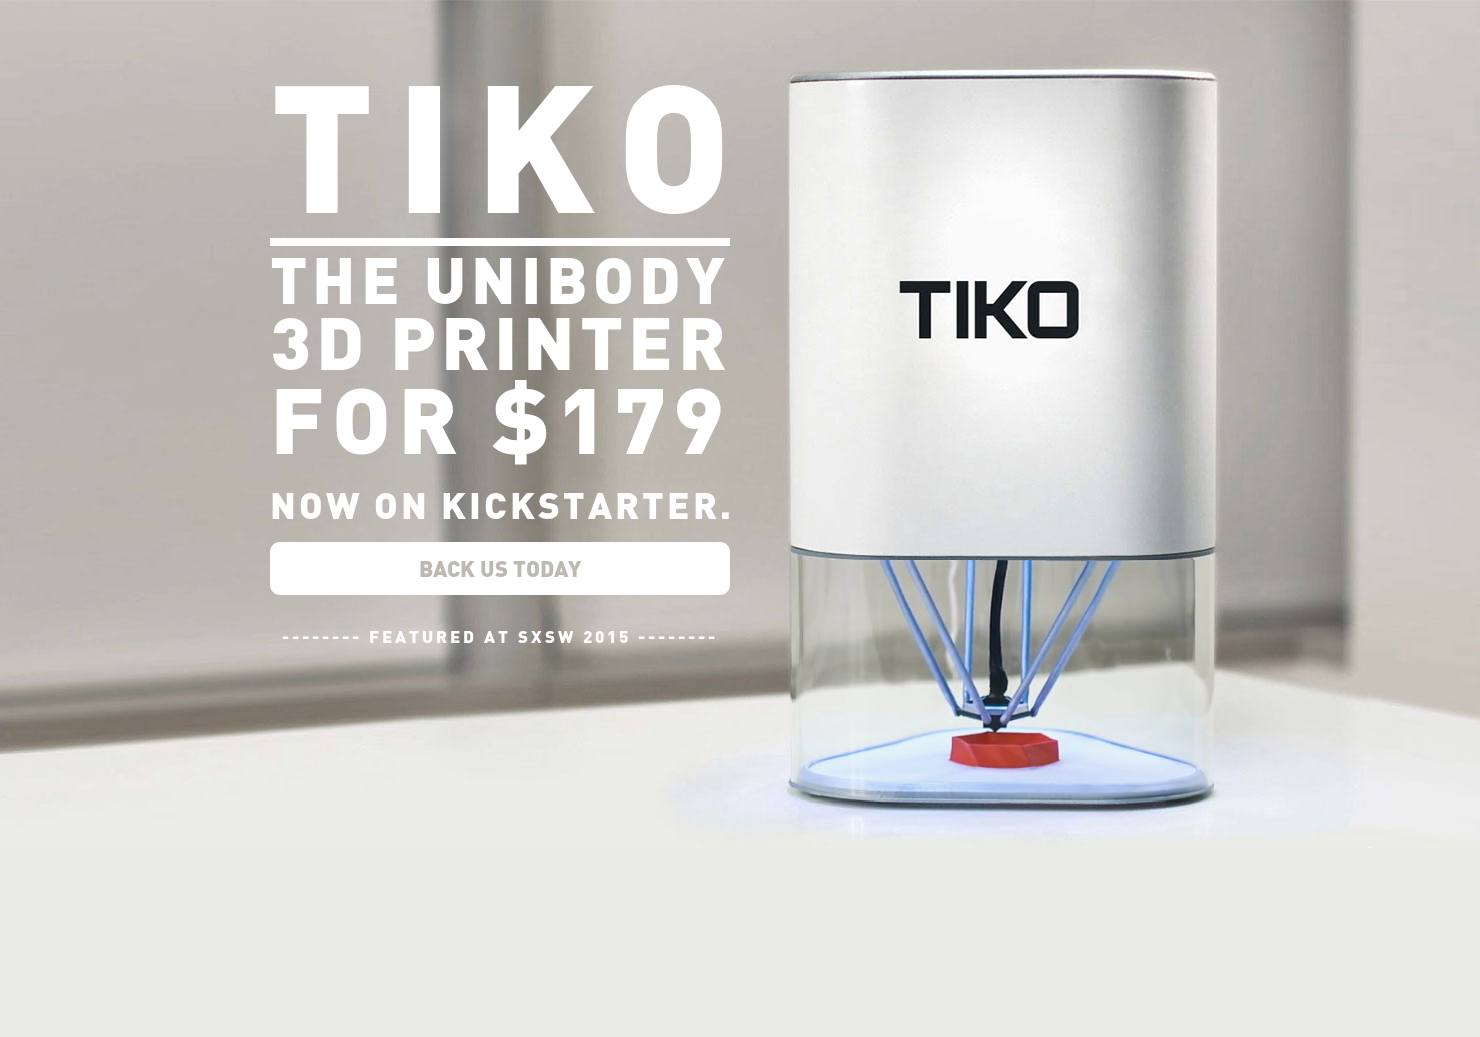 Product Hunt 😸 en Twitter: "Tiko 3D: Unibody Delta 3D Printer for $179 (Kickstarter) http://t.co/mBndMDvwGQ via @mattgajkowski on @producthunt http://t.co/Zd0YQ5k033" Twitter